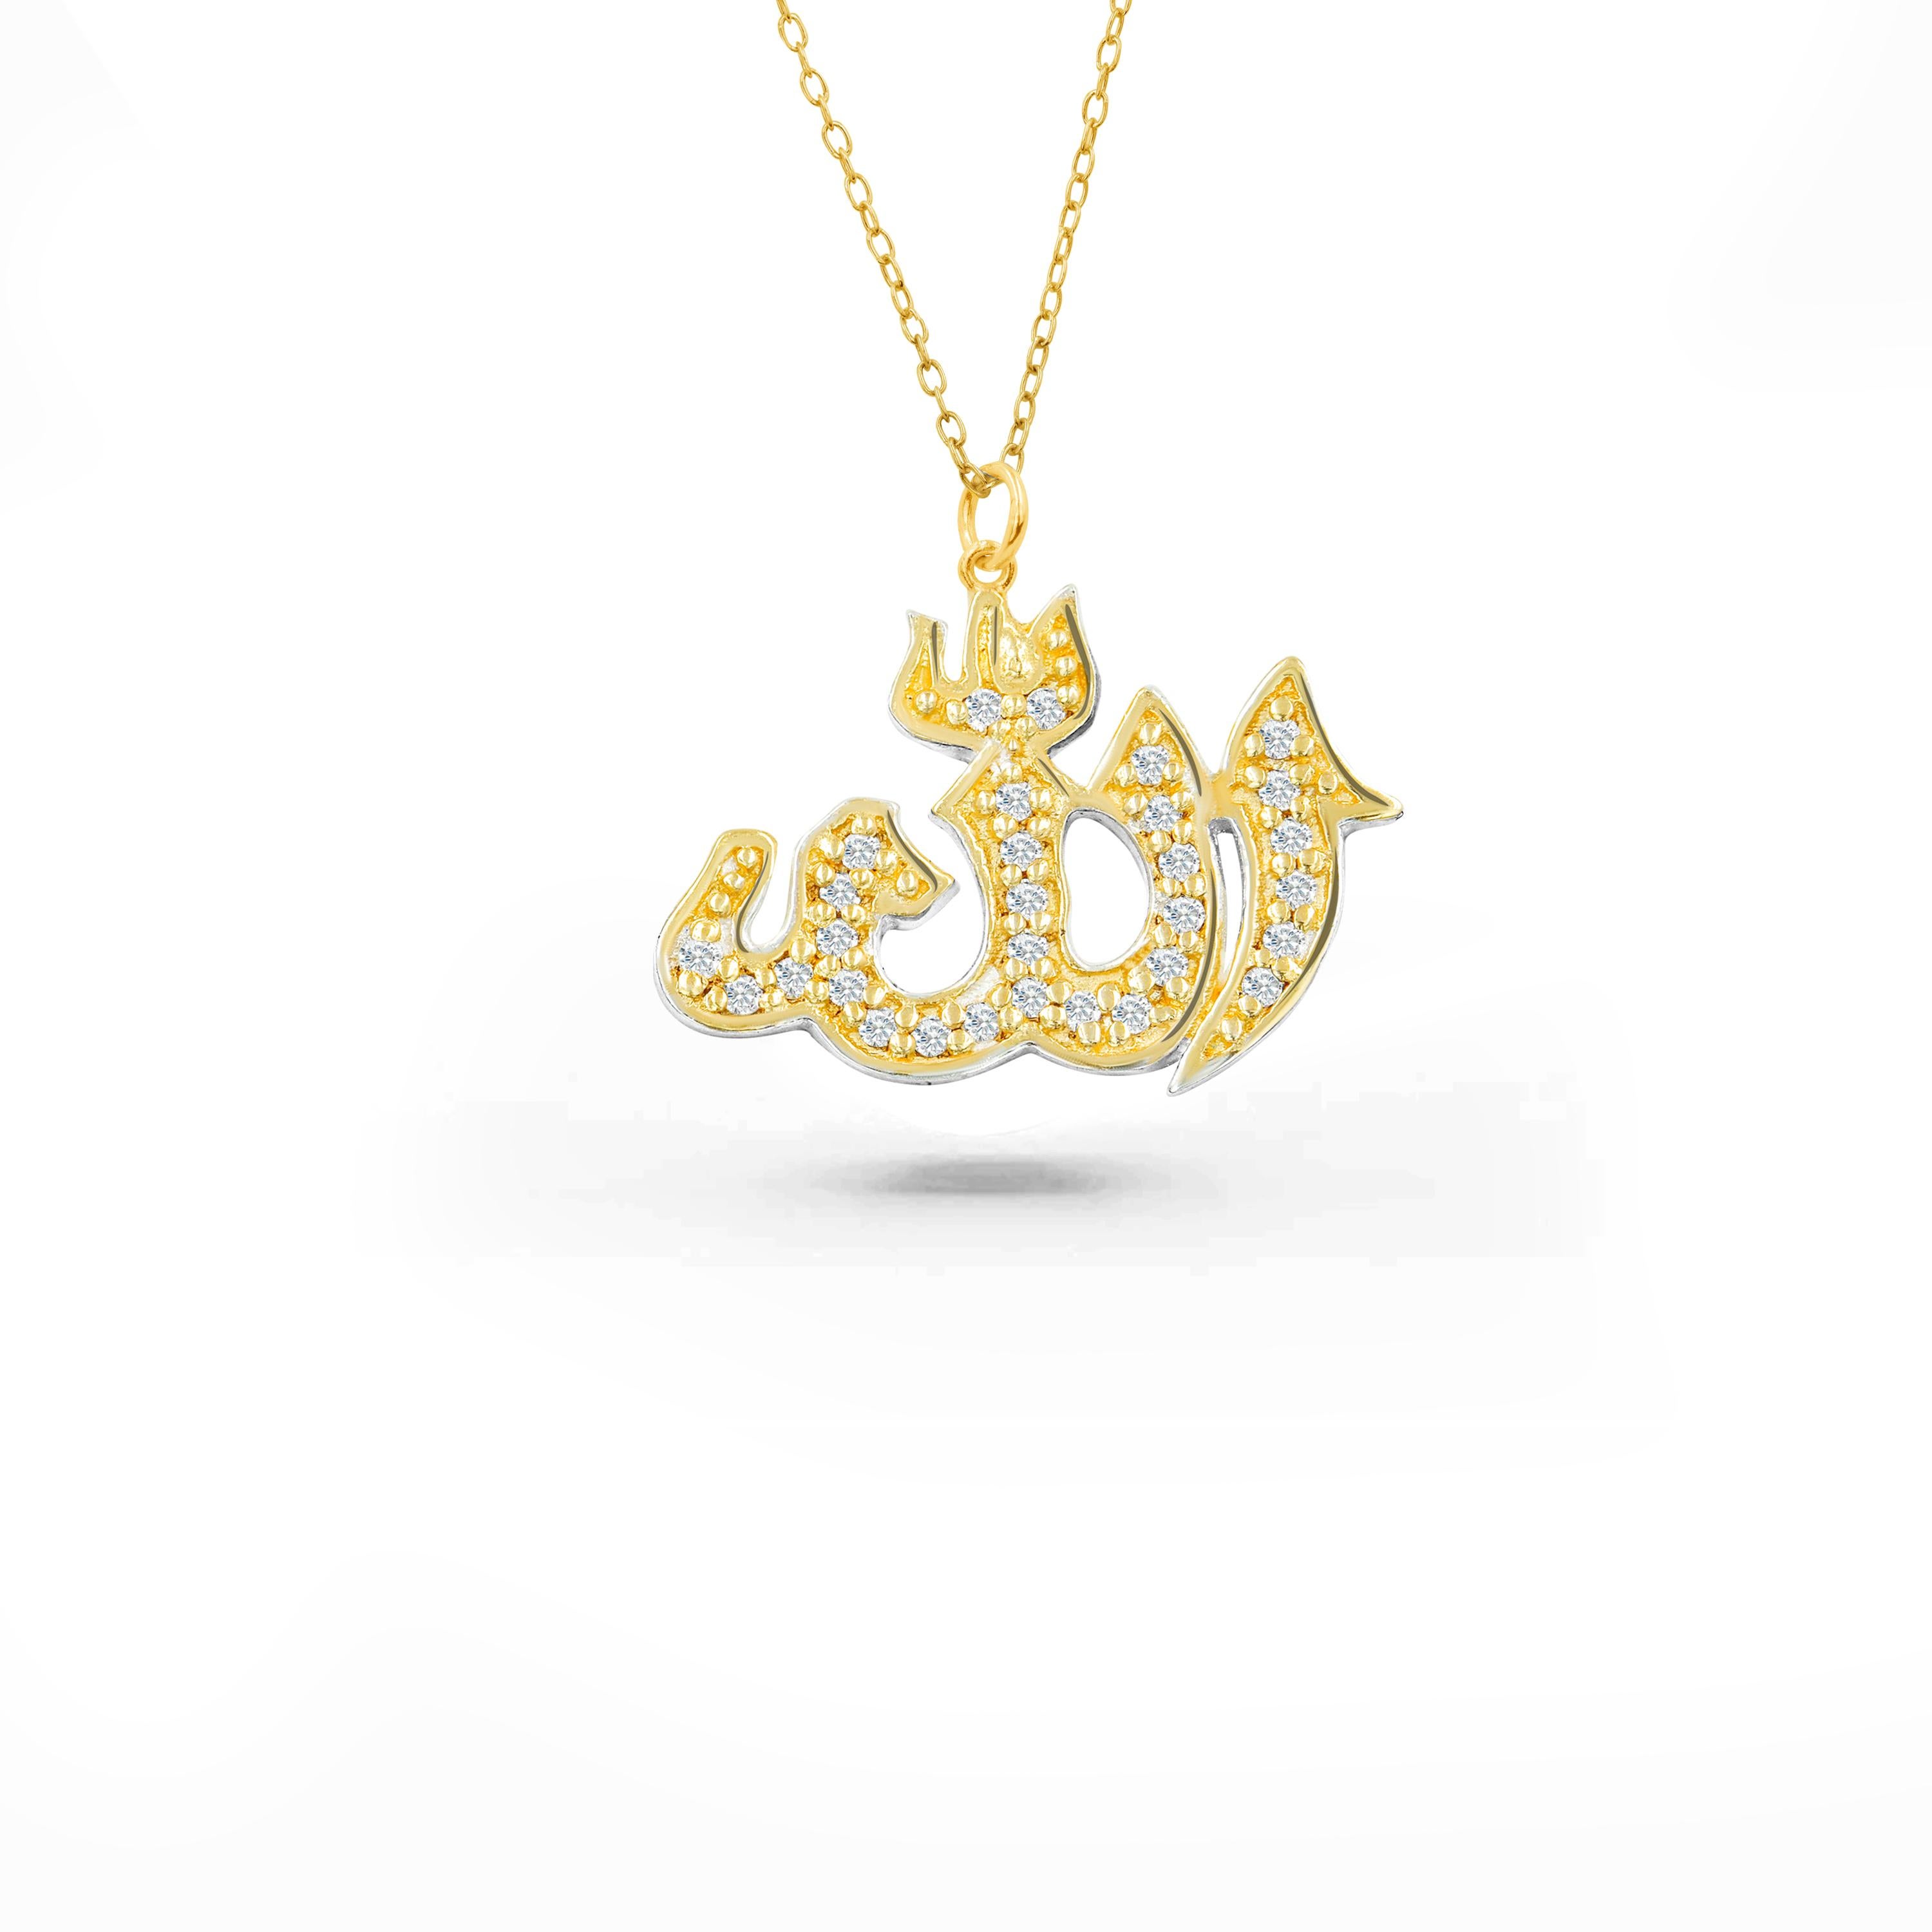 Die handgefertigte Allah-Diamant-Halskette ist eine perfekte Halskette für den Alltag, die inneren Frieden und Spiritualität bringt. Diese schöne religiöse Allah-Halskette ist ein Statement-Stück, das in Thailand mit Liebe und Sorgfalt hergestellt